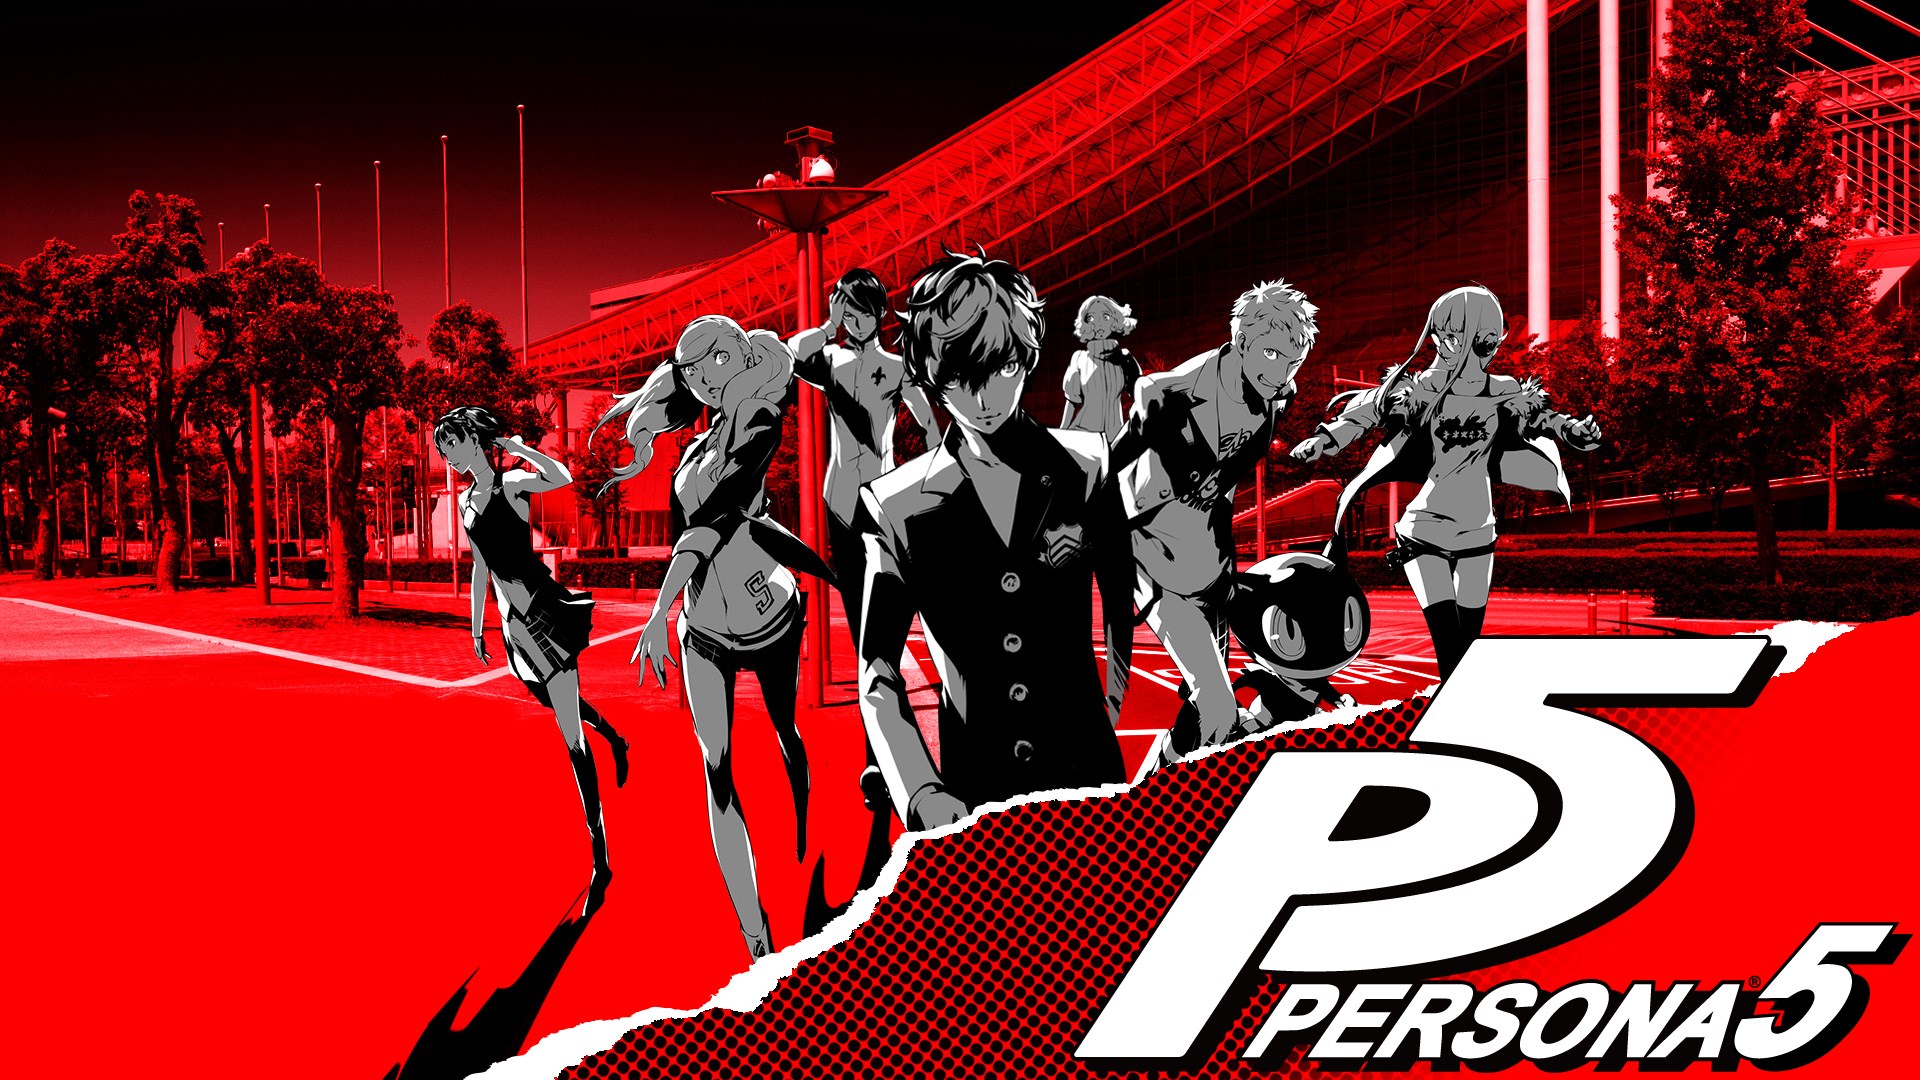 Persona 5 Protagonist Persona 5 Persona Series 1920x1080